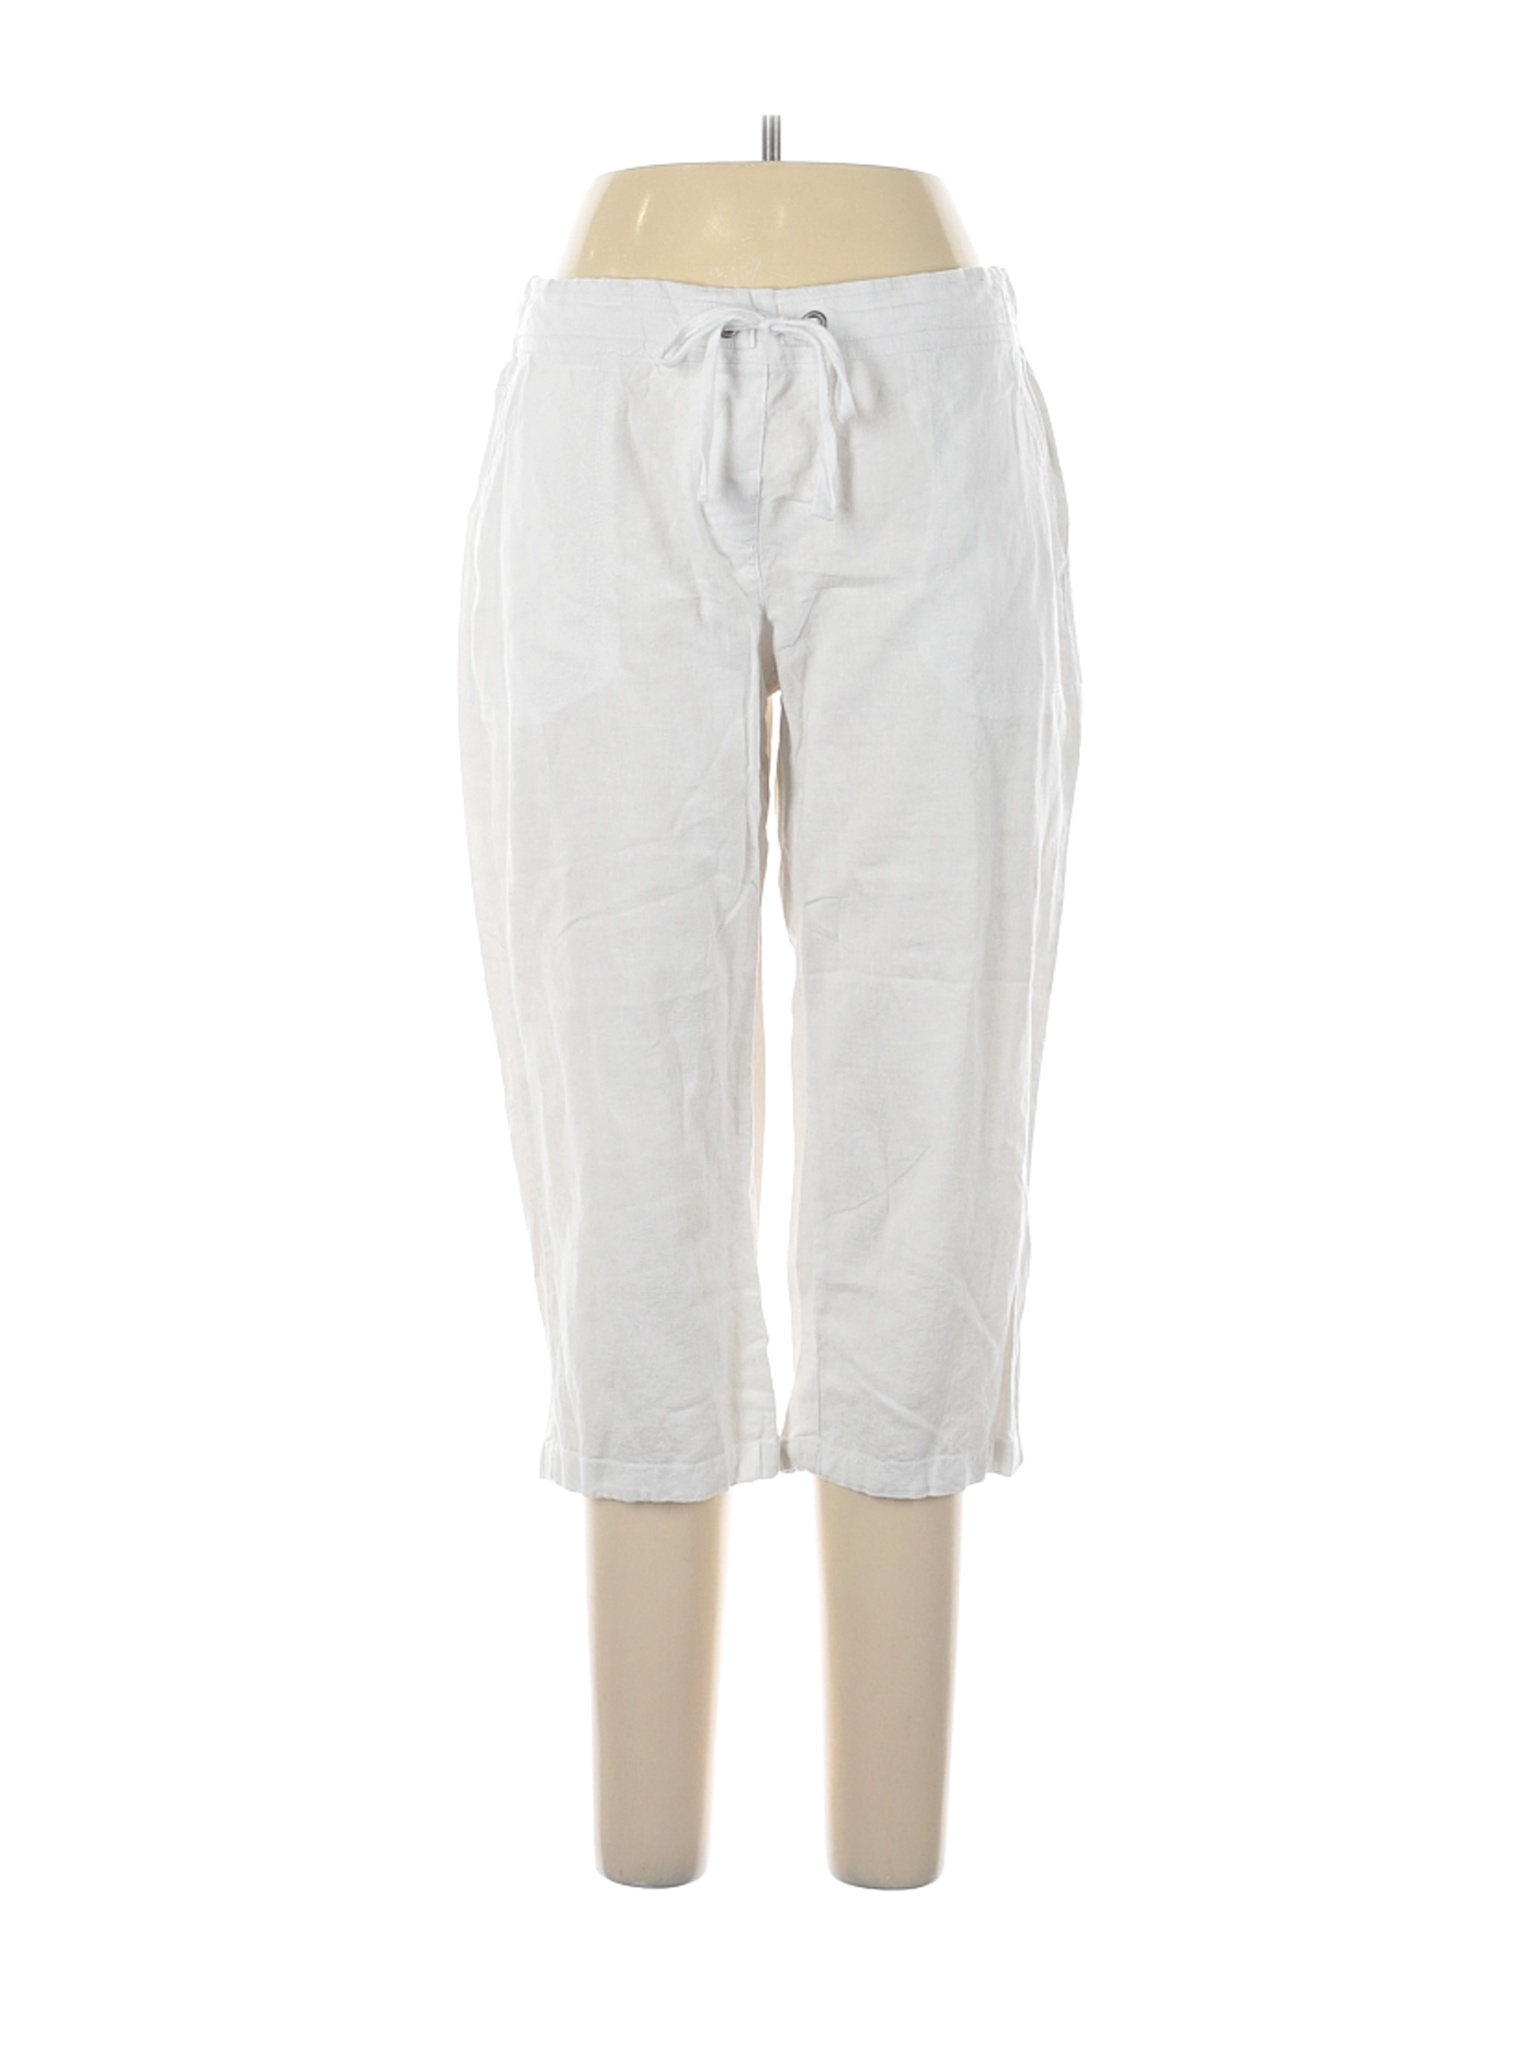 Per Se Women White Linen Pants L | eBay